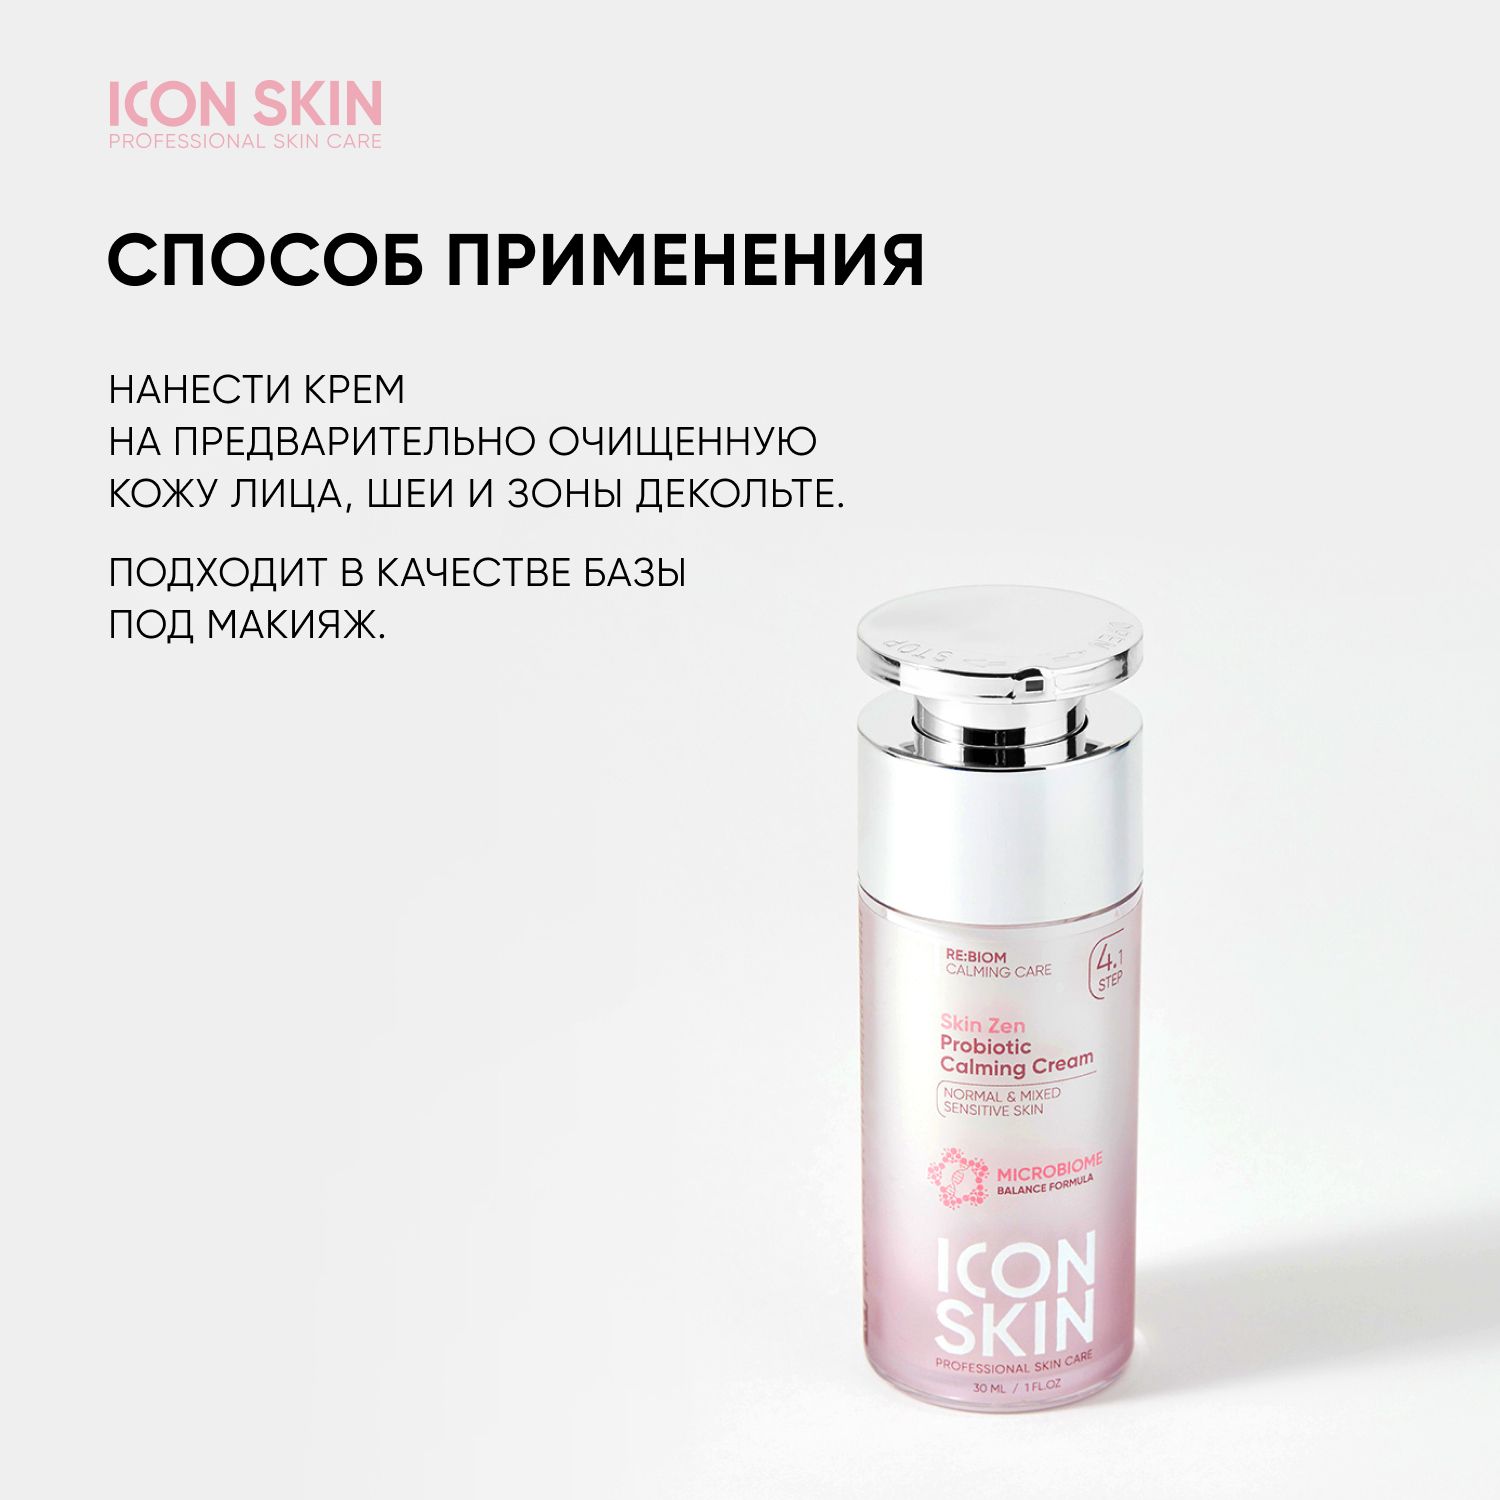 Icon skin цена